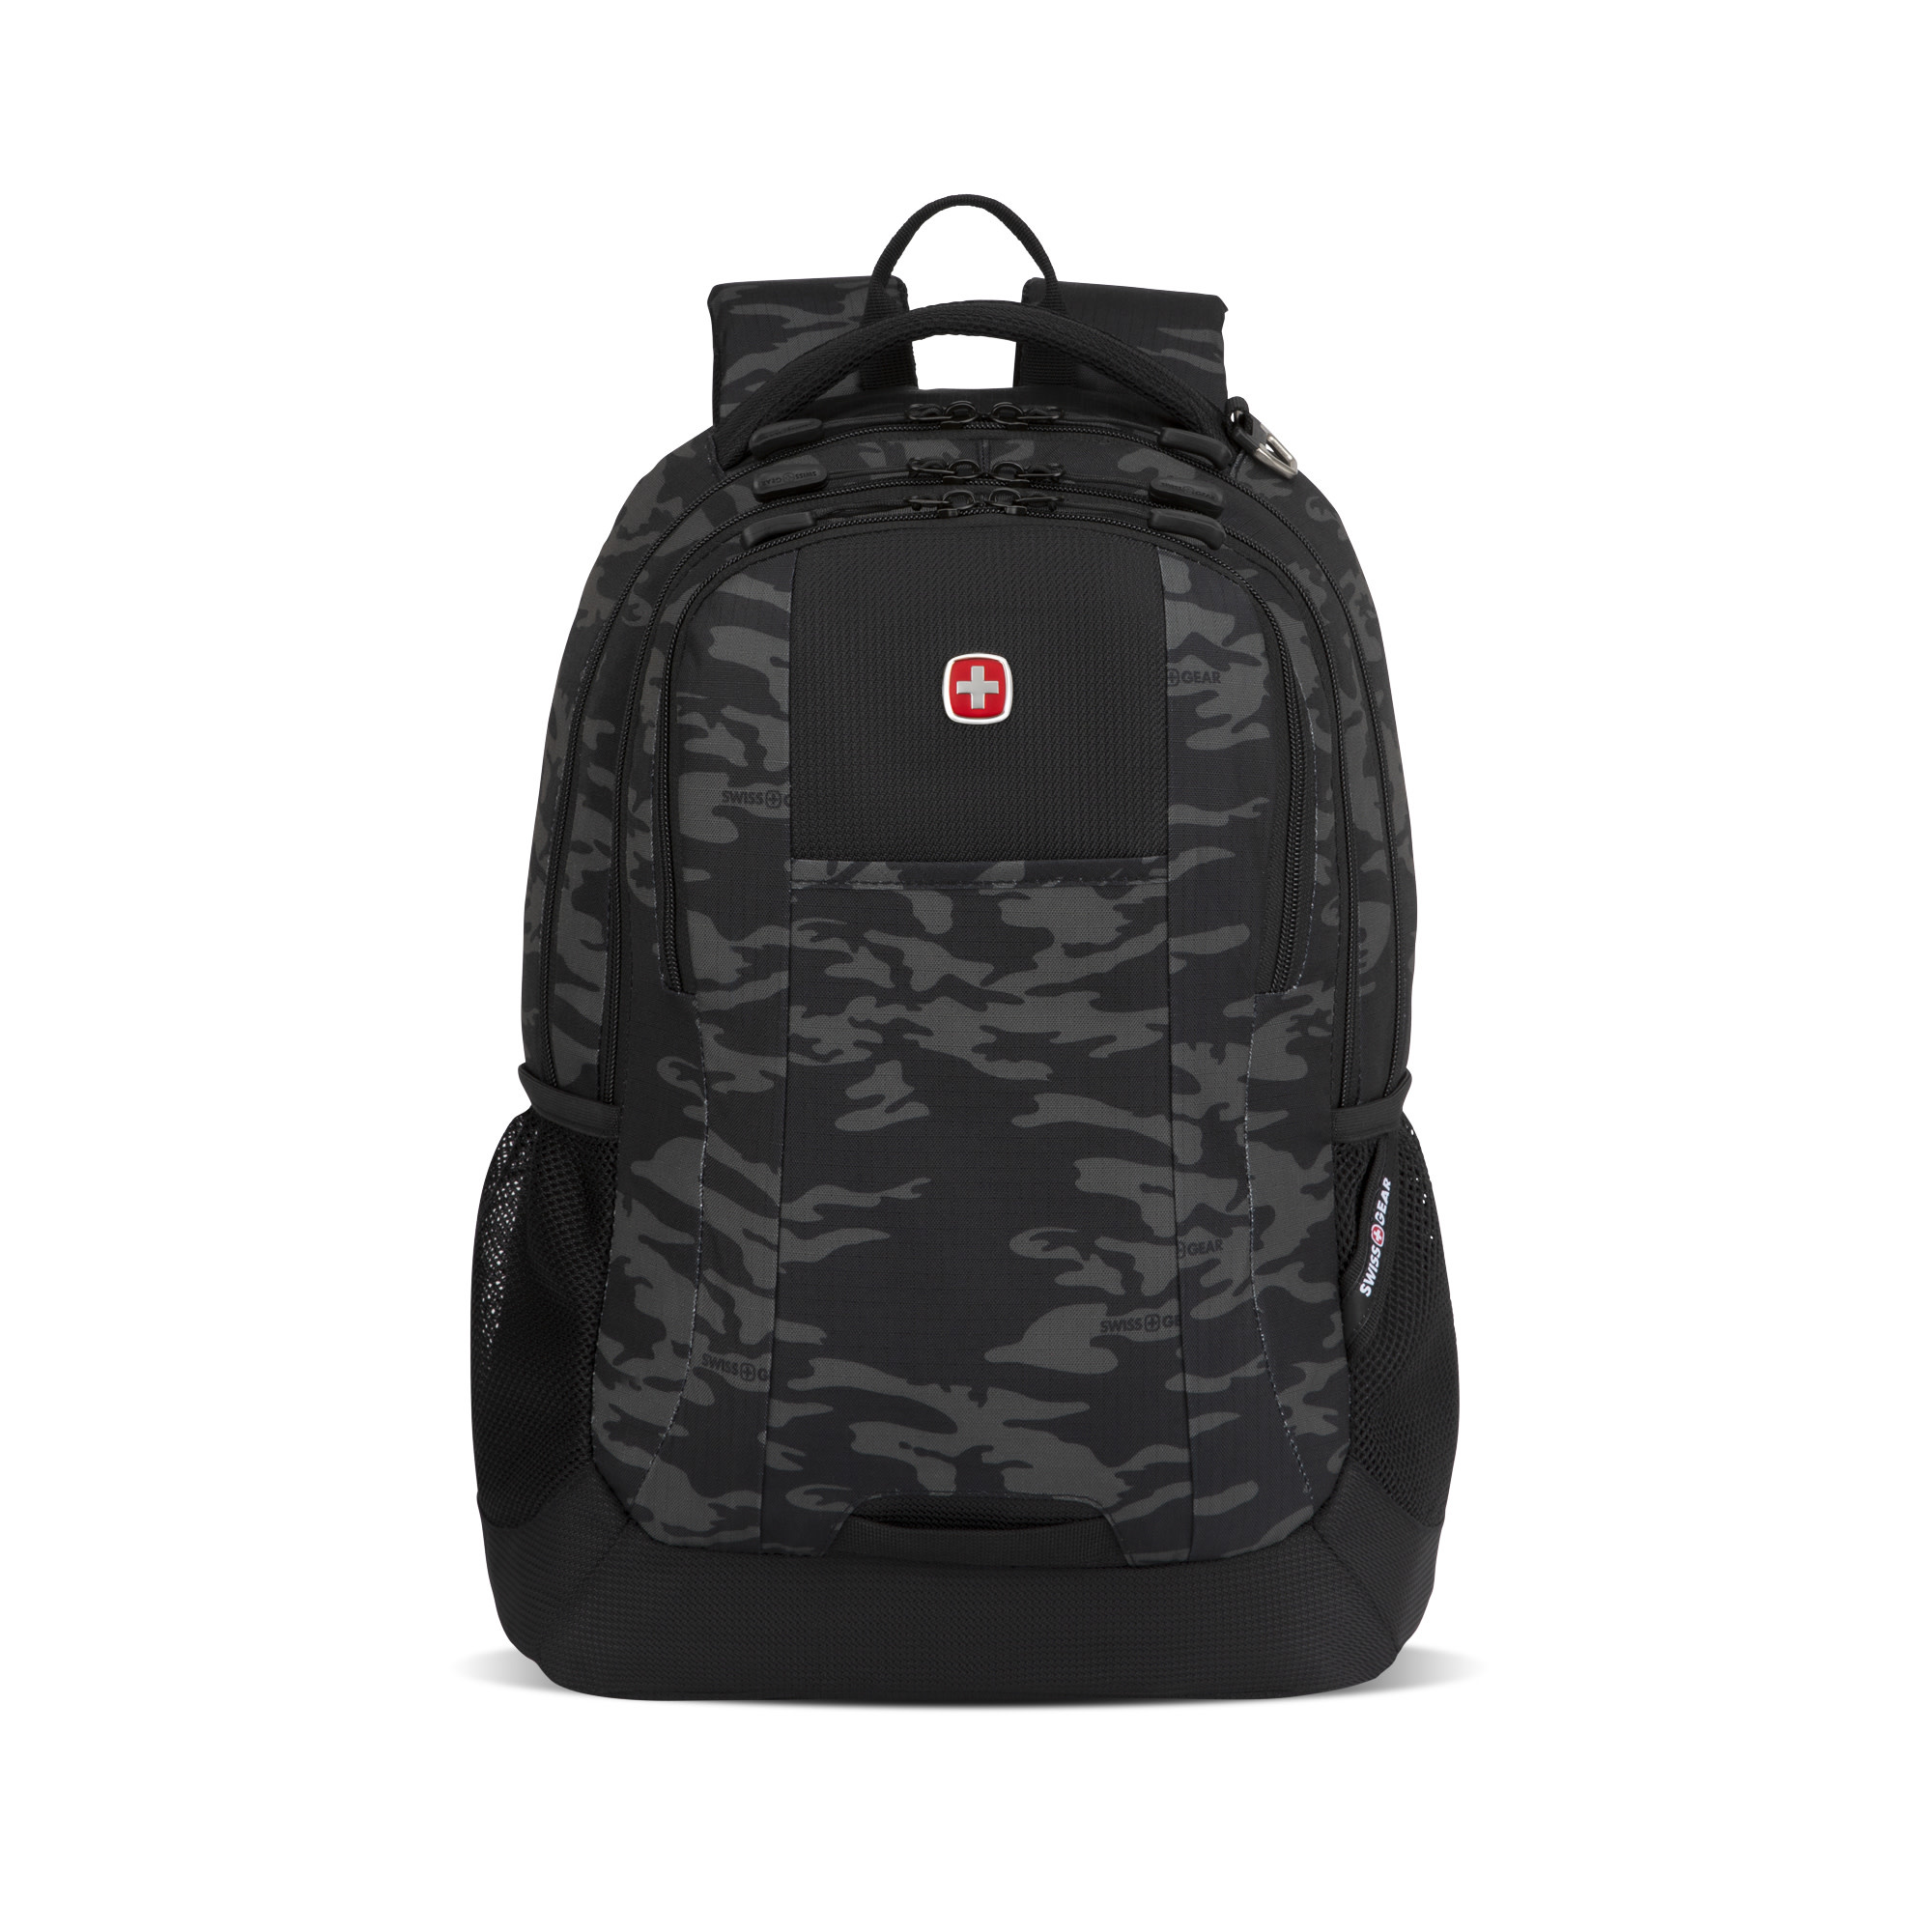 Swissgear 5505 Laptop Backpack- Black/Camo